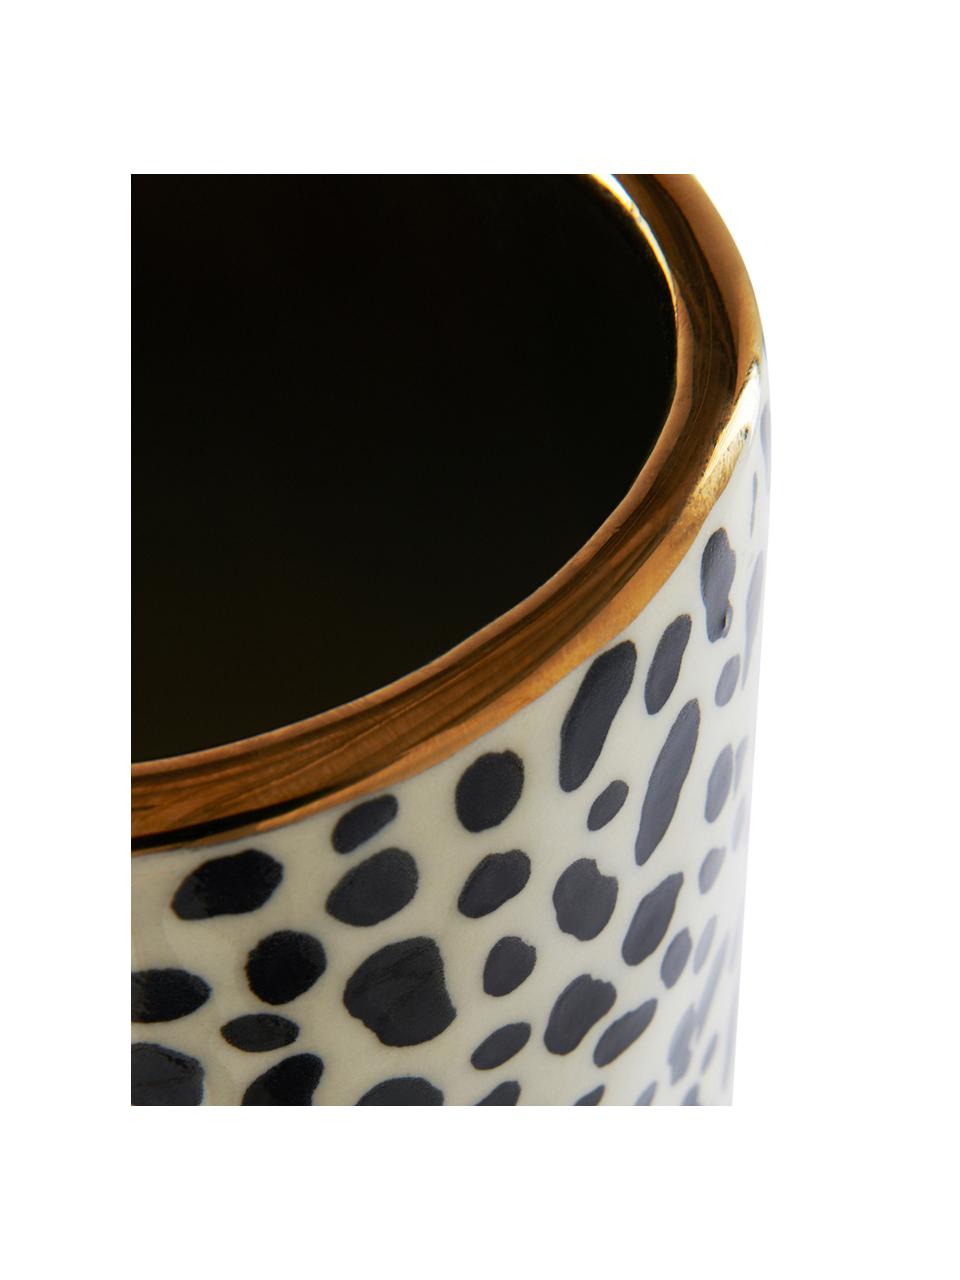 Grand vase fait main en céramique Fifi, Beige, noir, couleur dorée